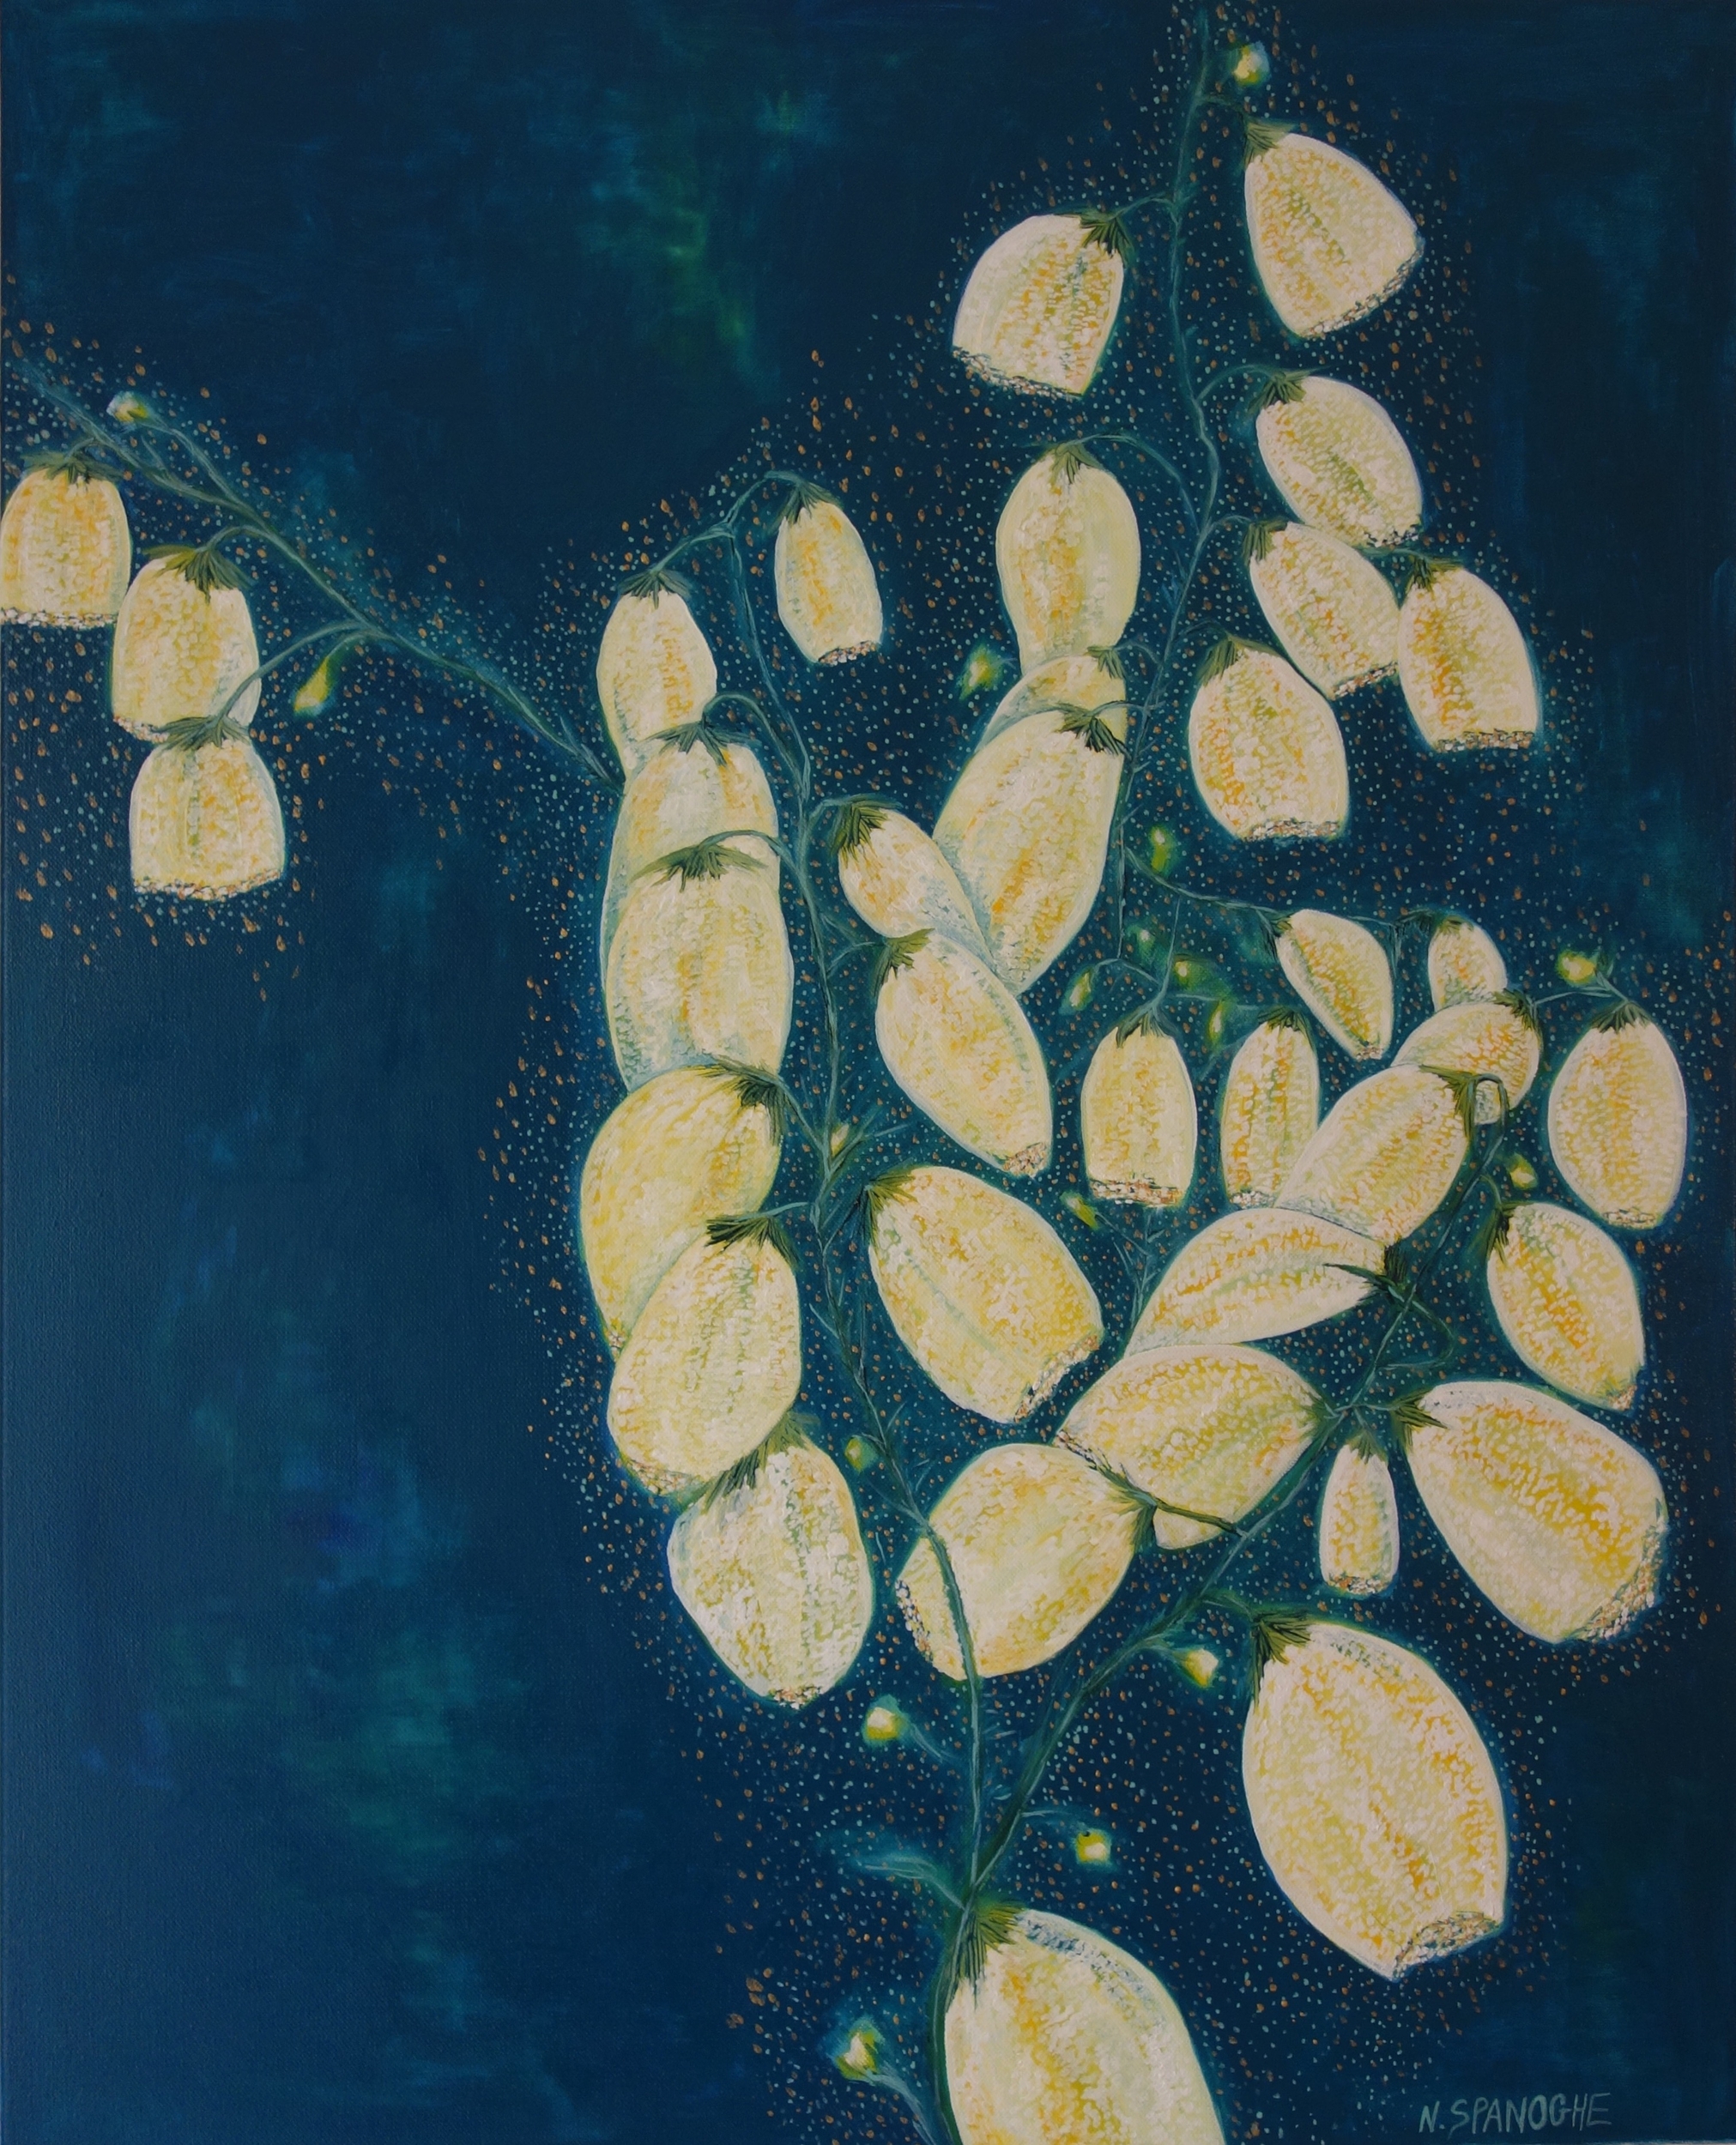 Tableau Lanternes végétales de Nathalie Spanoghe, une plante imaginaire ou des lanternes magiques jaunes et bleu canard